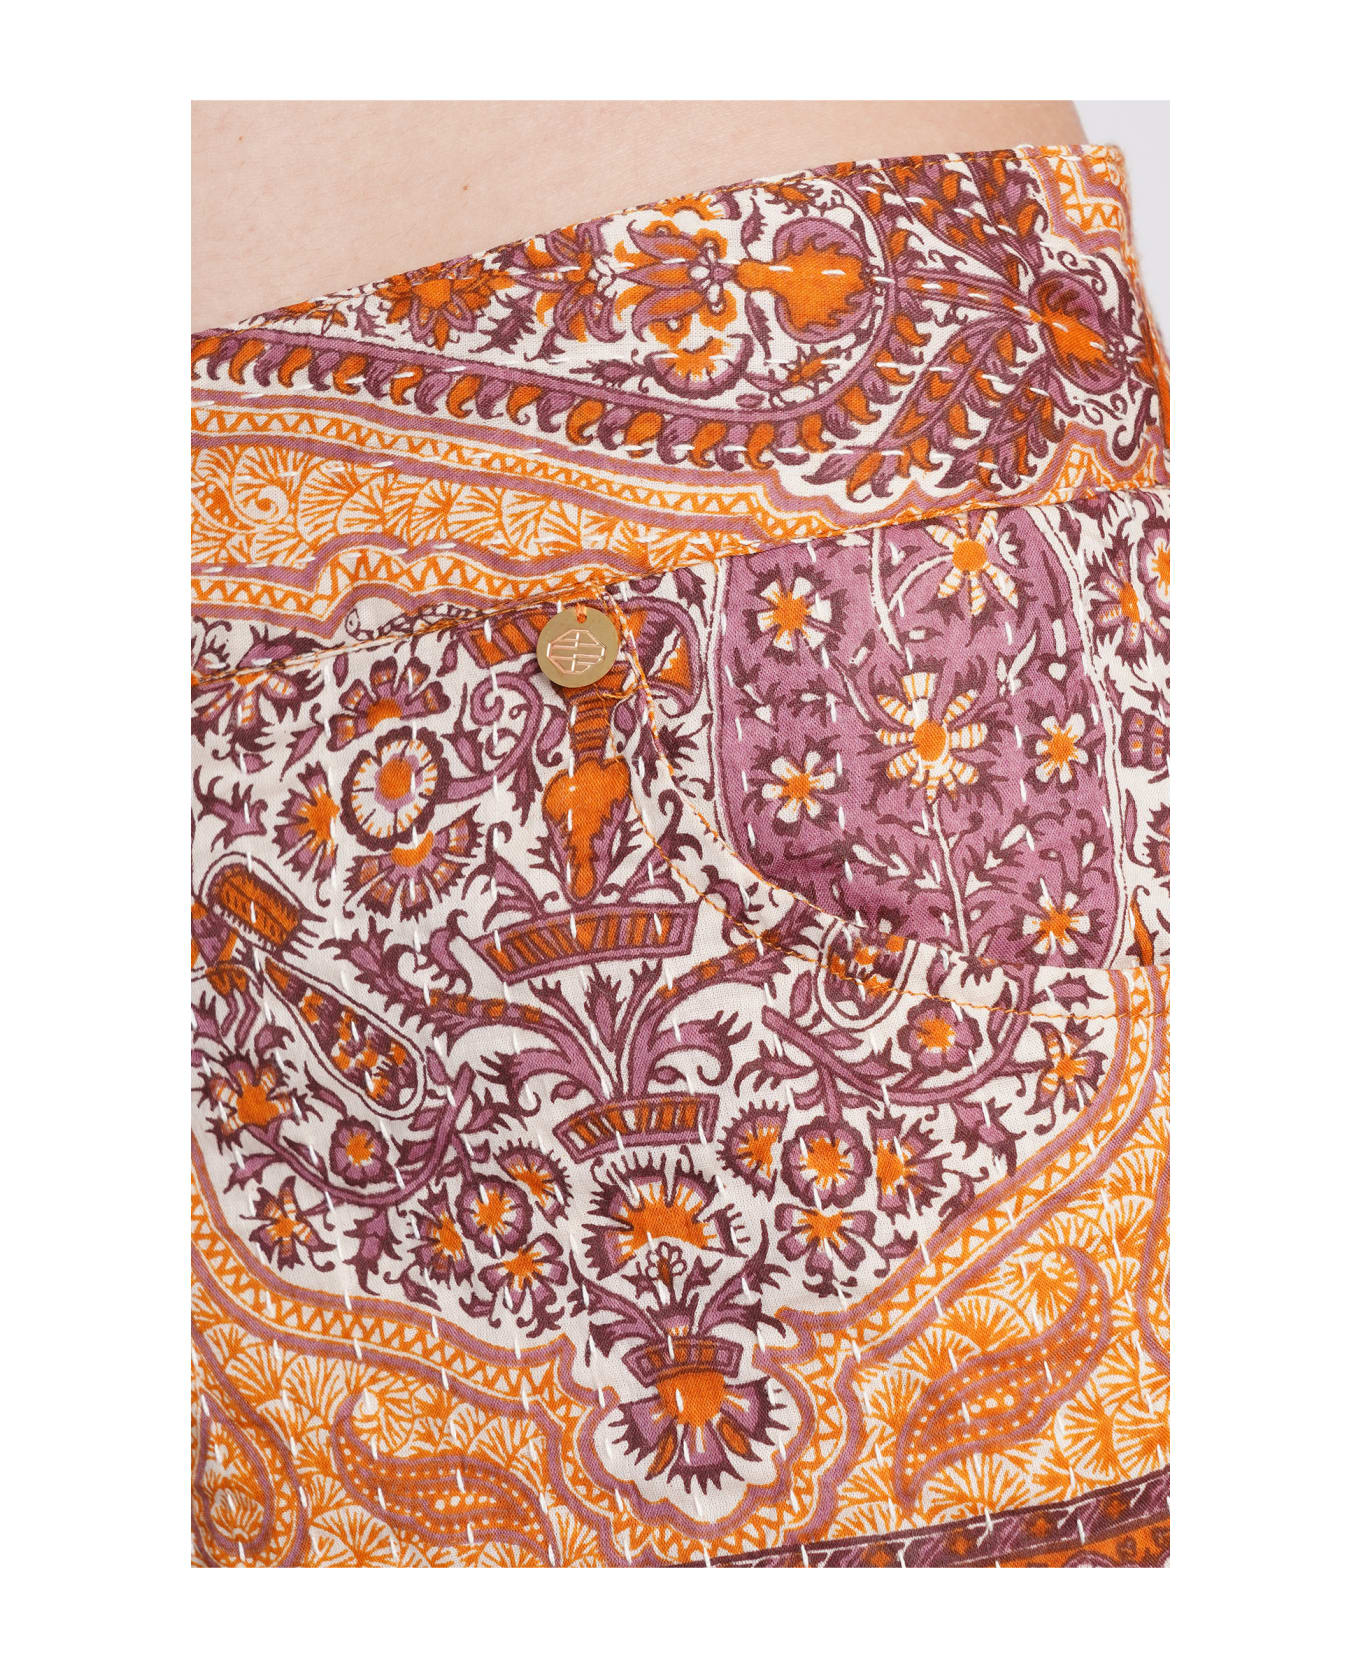 Antik Batik Tajar Shorts In Orange Cotton - orange